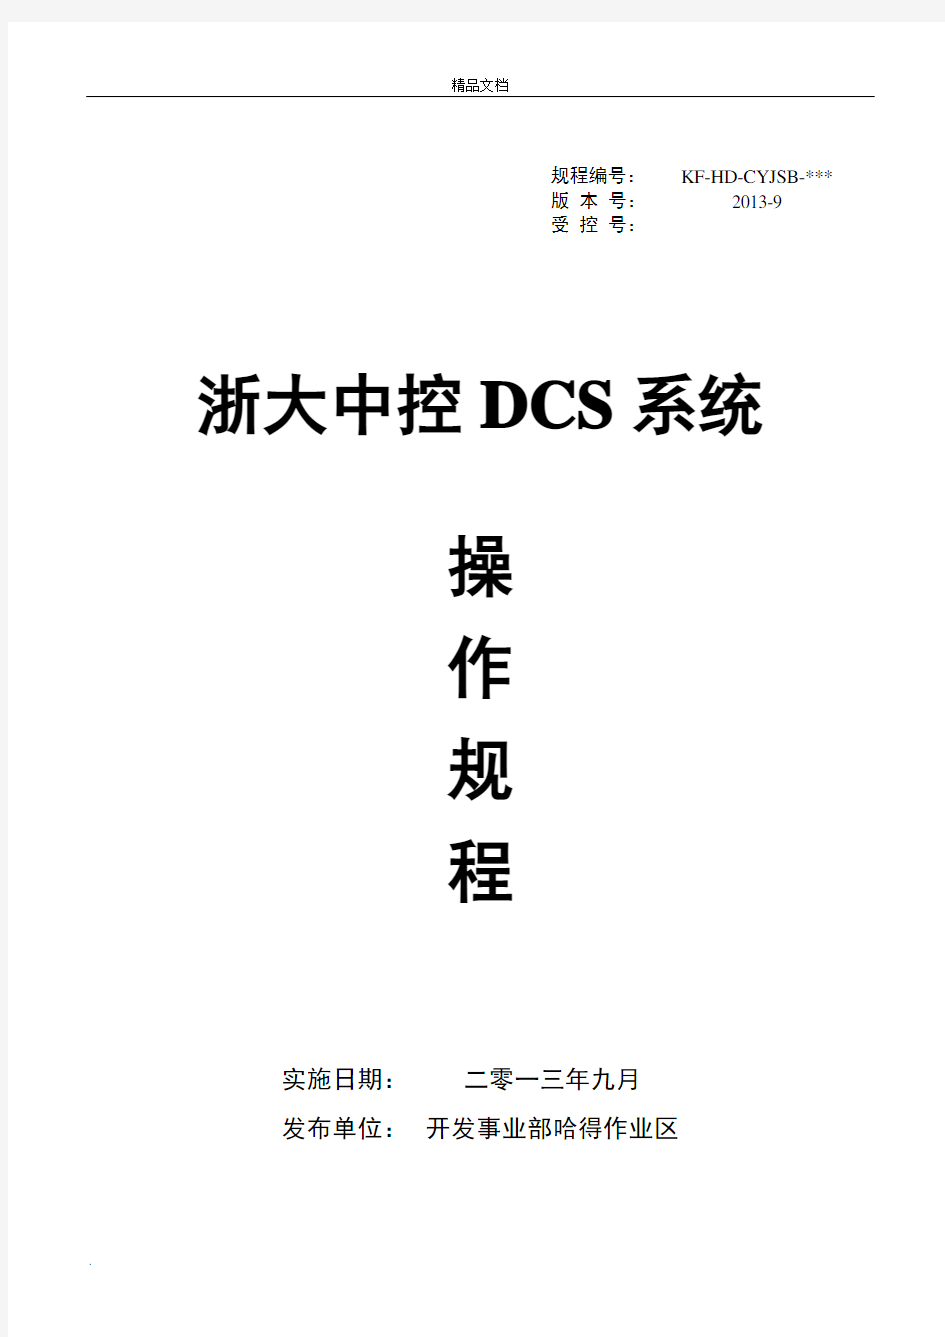 浙大中控DCS系统操作规程